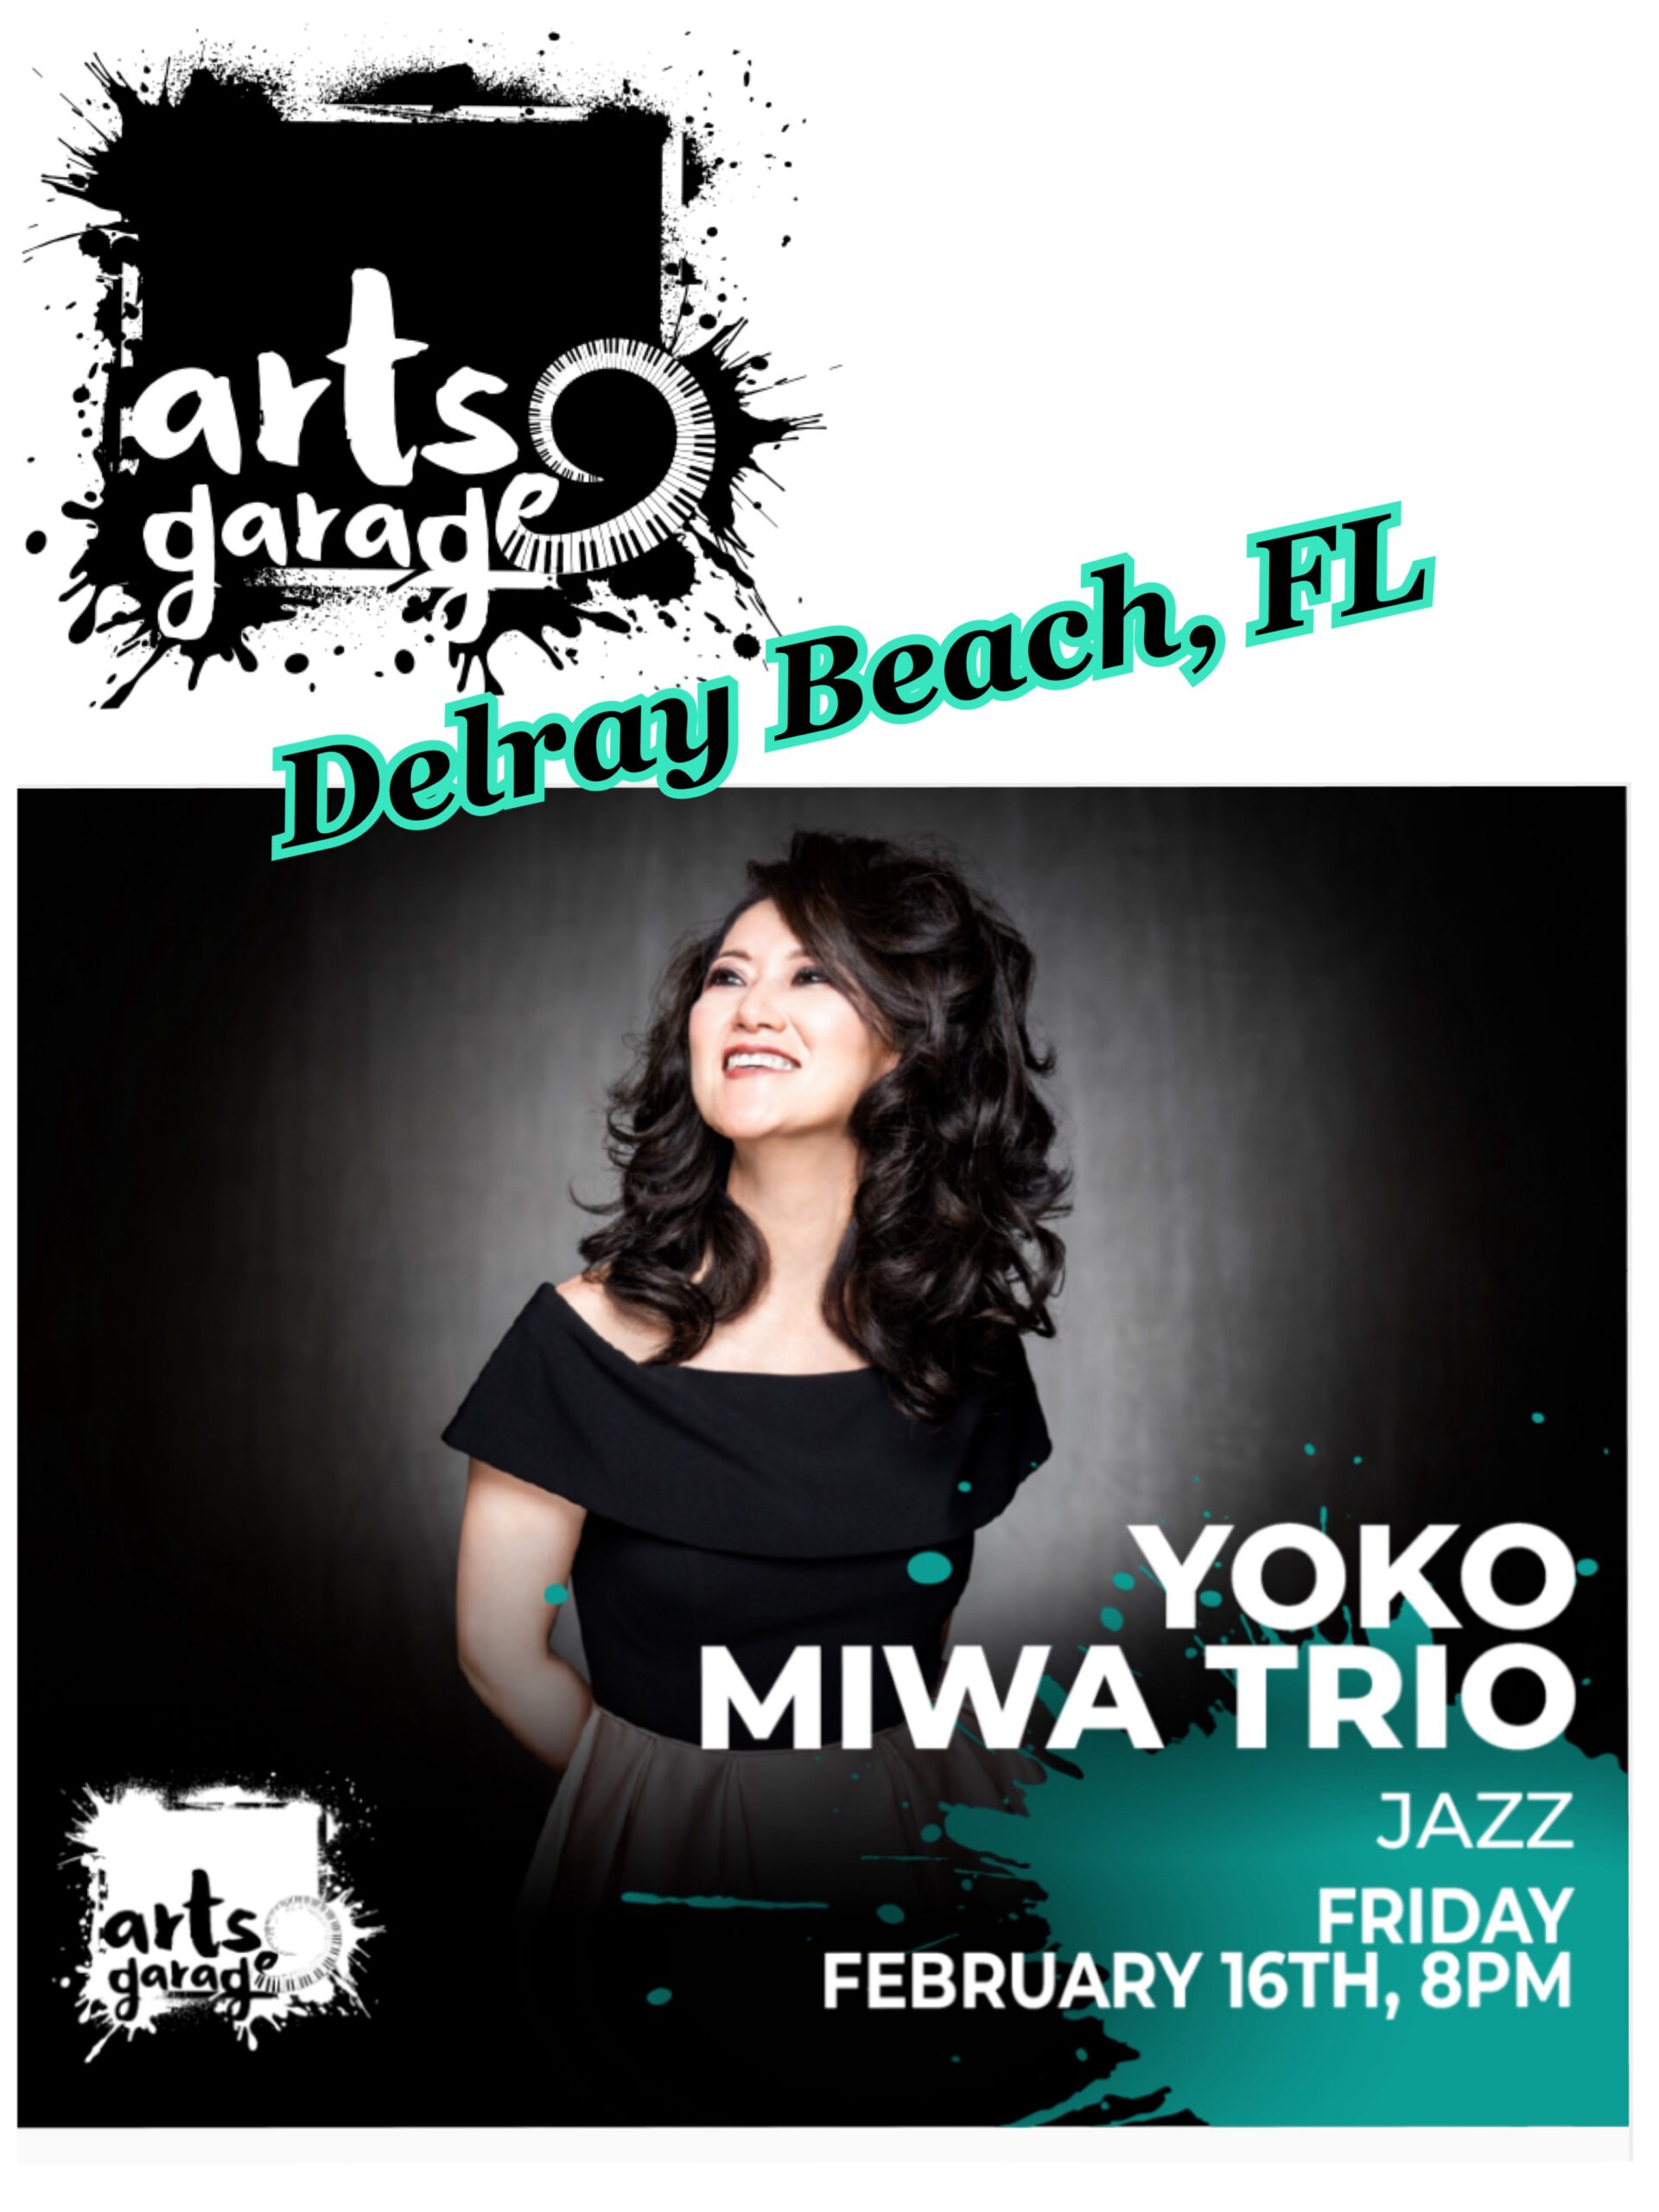 Yoko Miwa Trio at ArtsGarage in Delray Beach Florida